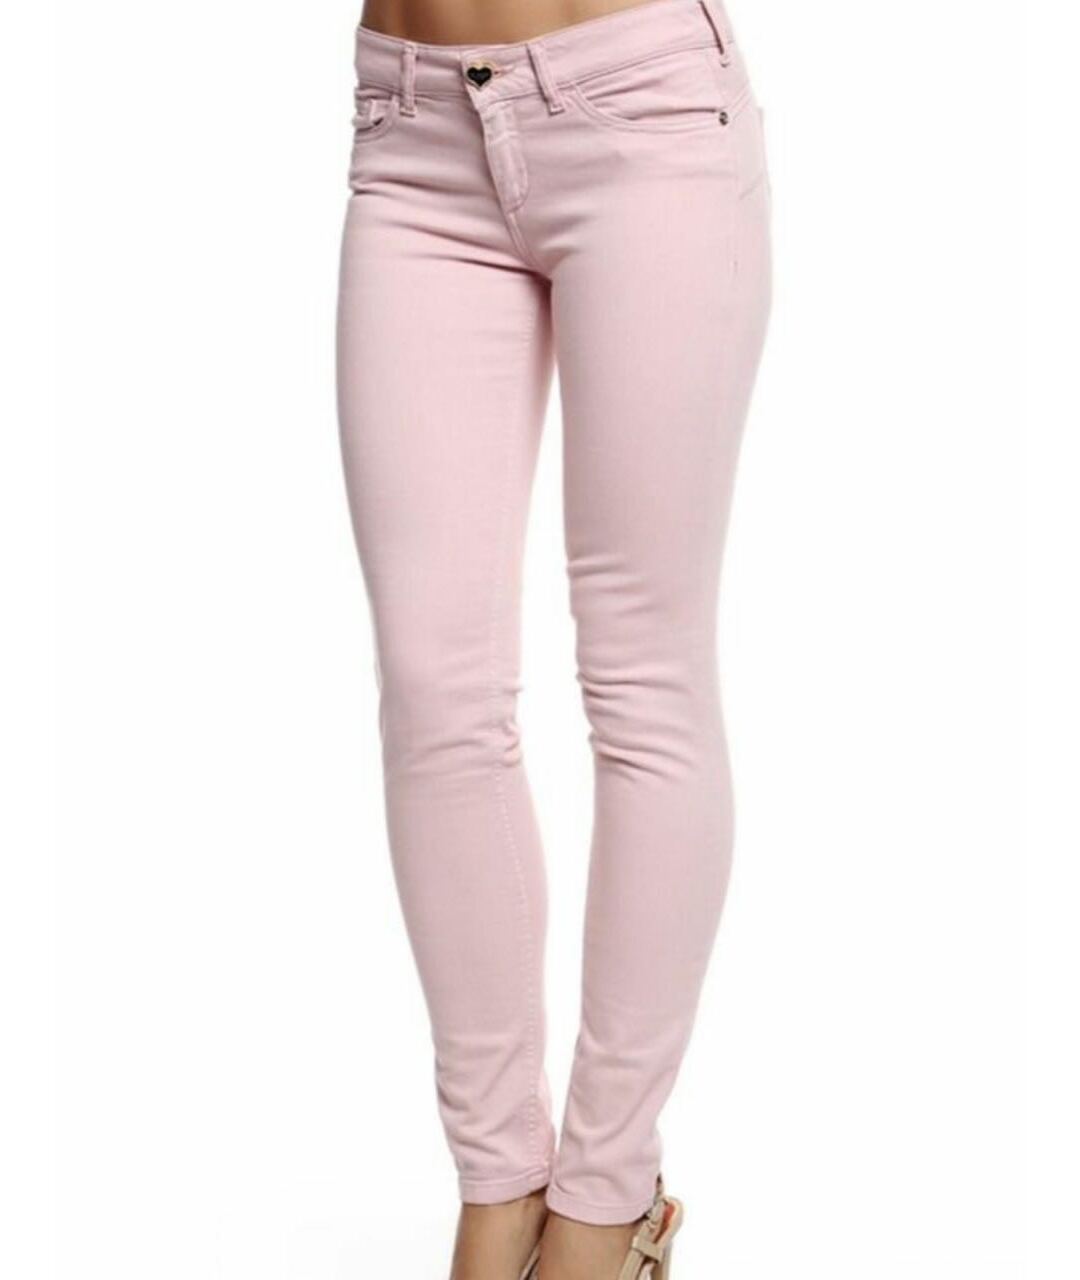 TWIN-SET Розовые хлопковые джинсы слим, фото 2